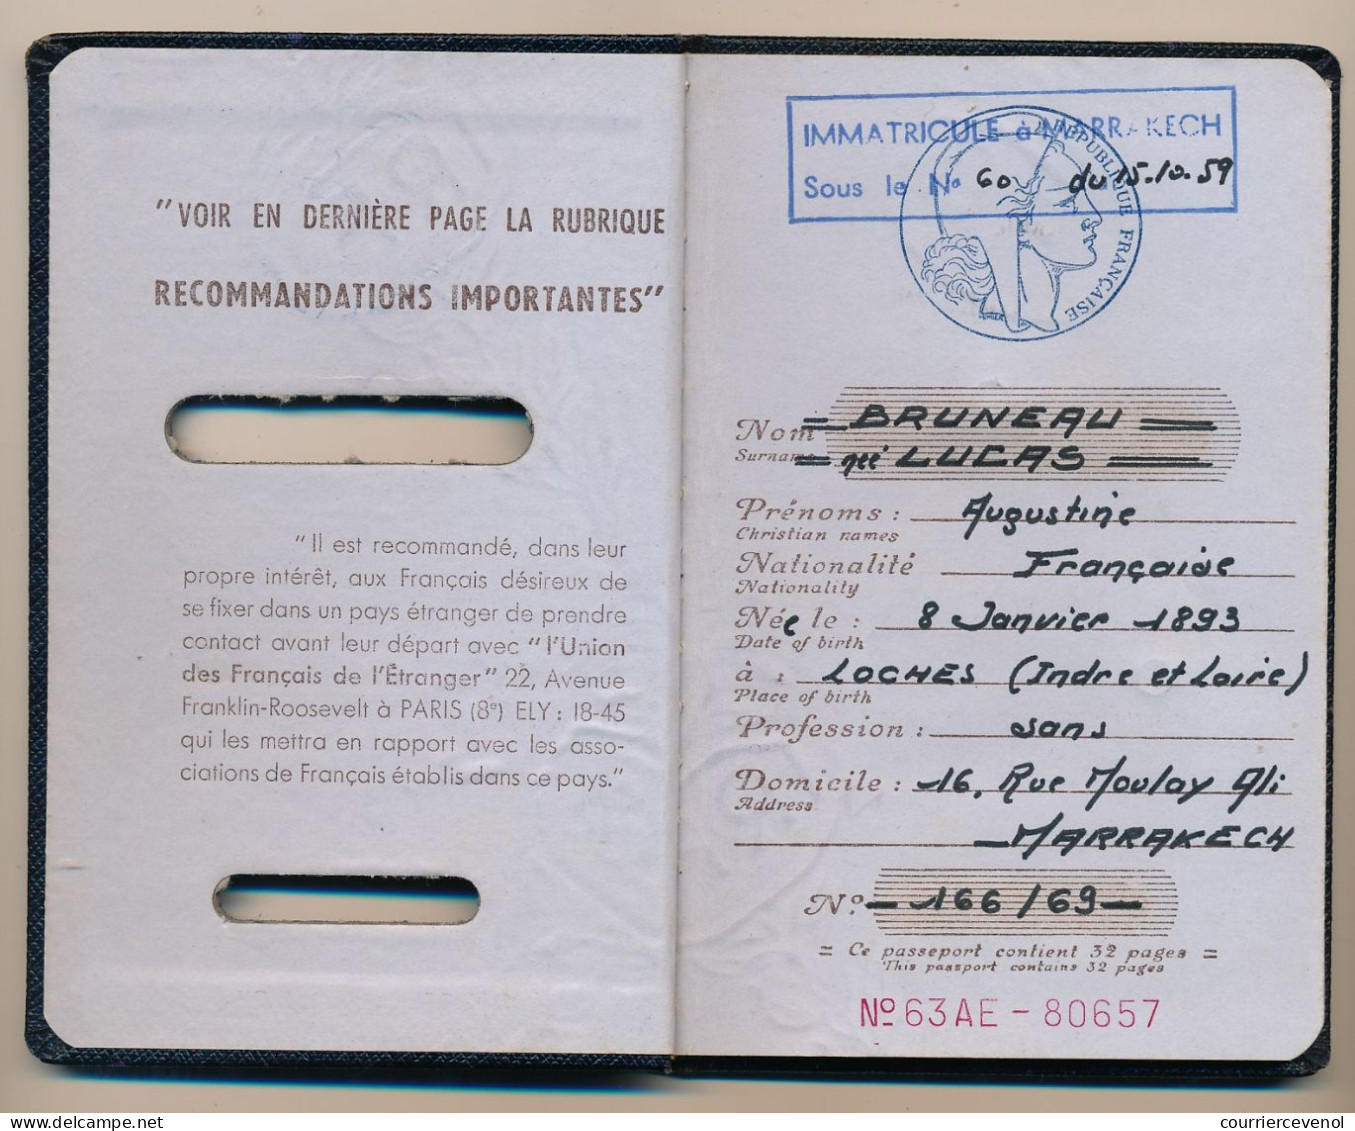 FRANCE / MAROC - Passeport émis à Marrakech (Consulat) 1972 - Fiscal Affaires Etrangères - Visa Casablanca - Unclassified